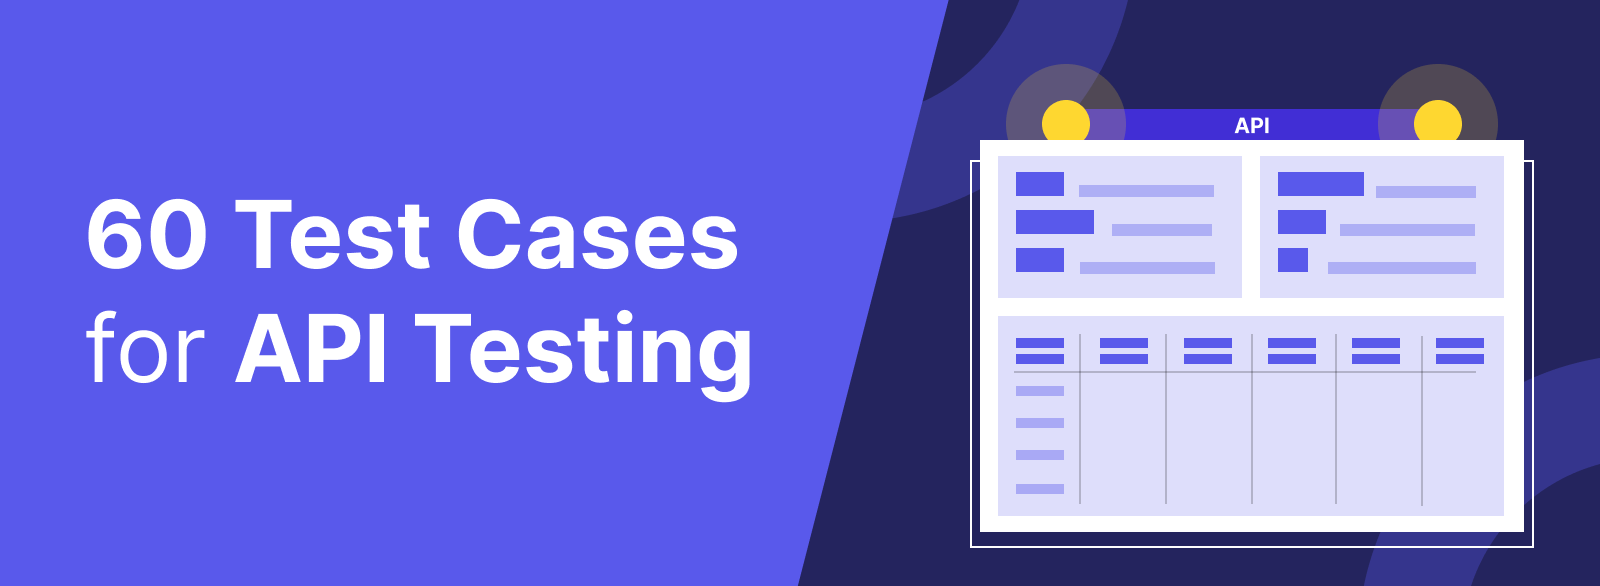 60 test cases for API testing